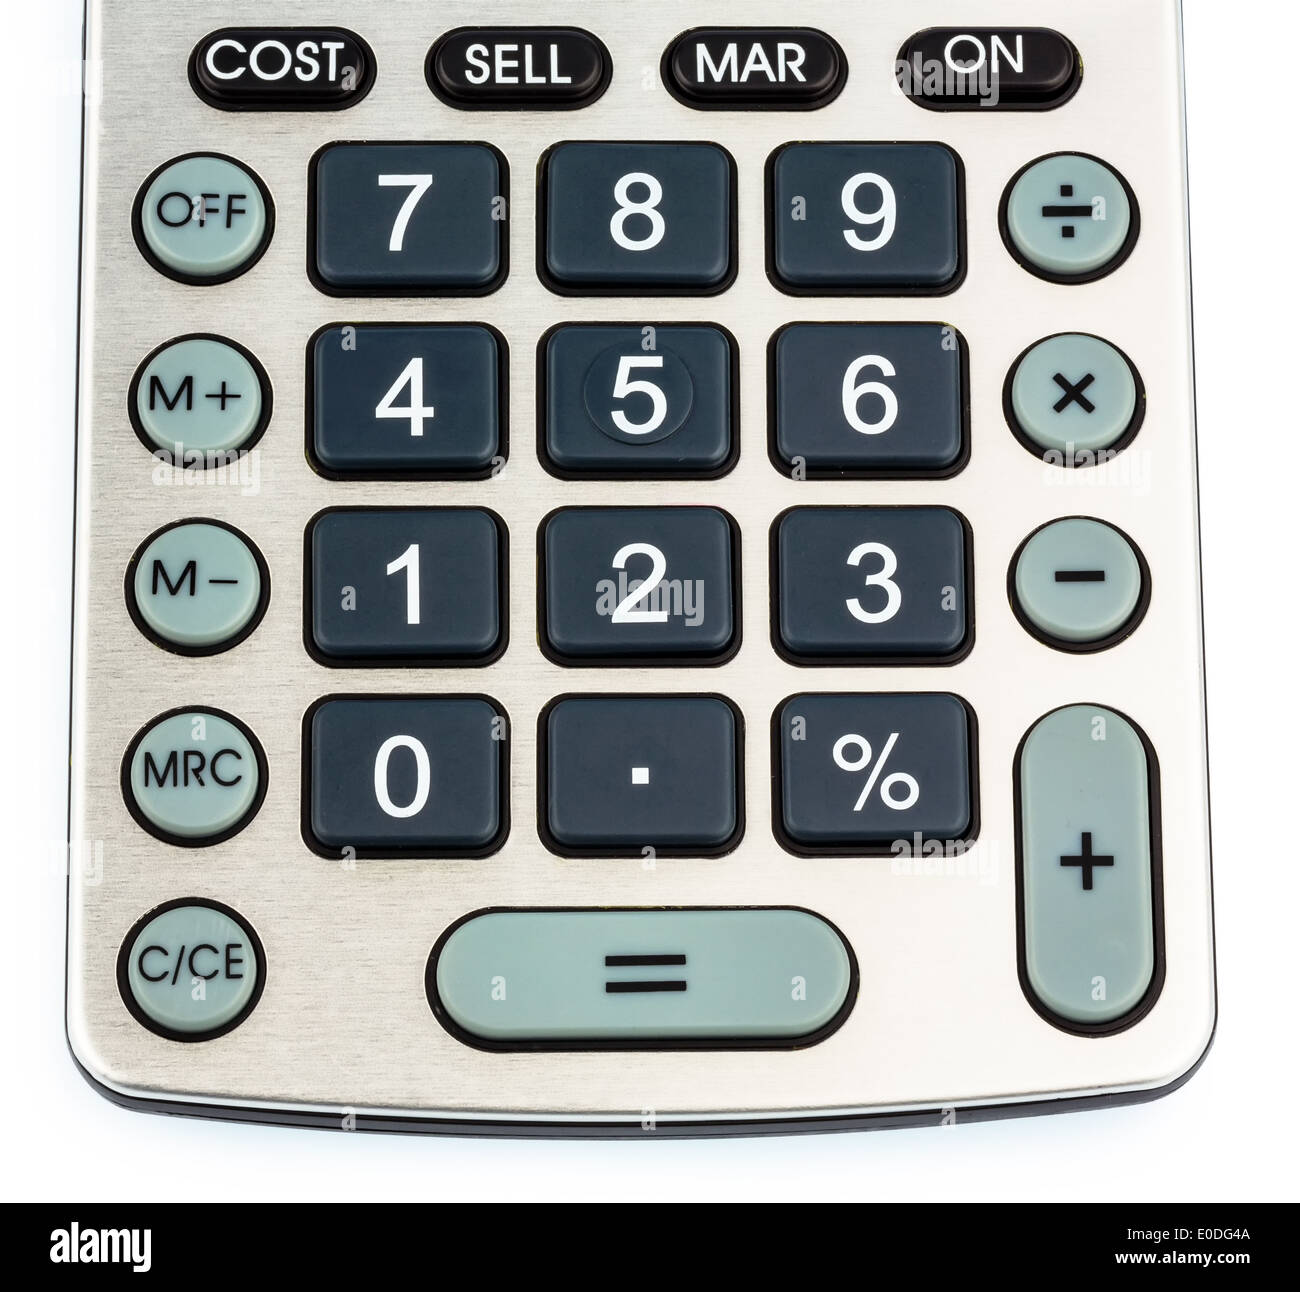 Une calculatrice de poche se trouve sur un fond blanc, Ein Taschenrechner liegt auf einem weissen Hintergrund Banque D'Images